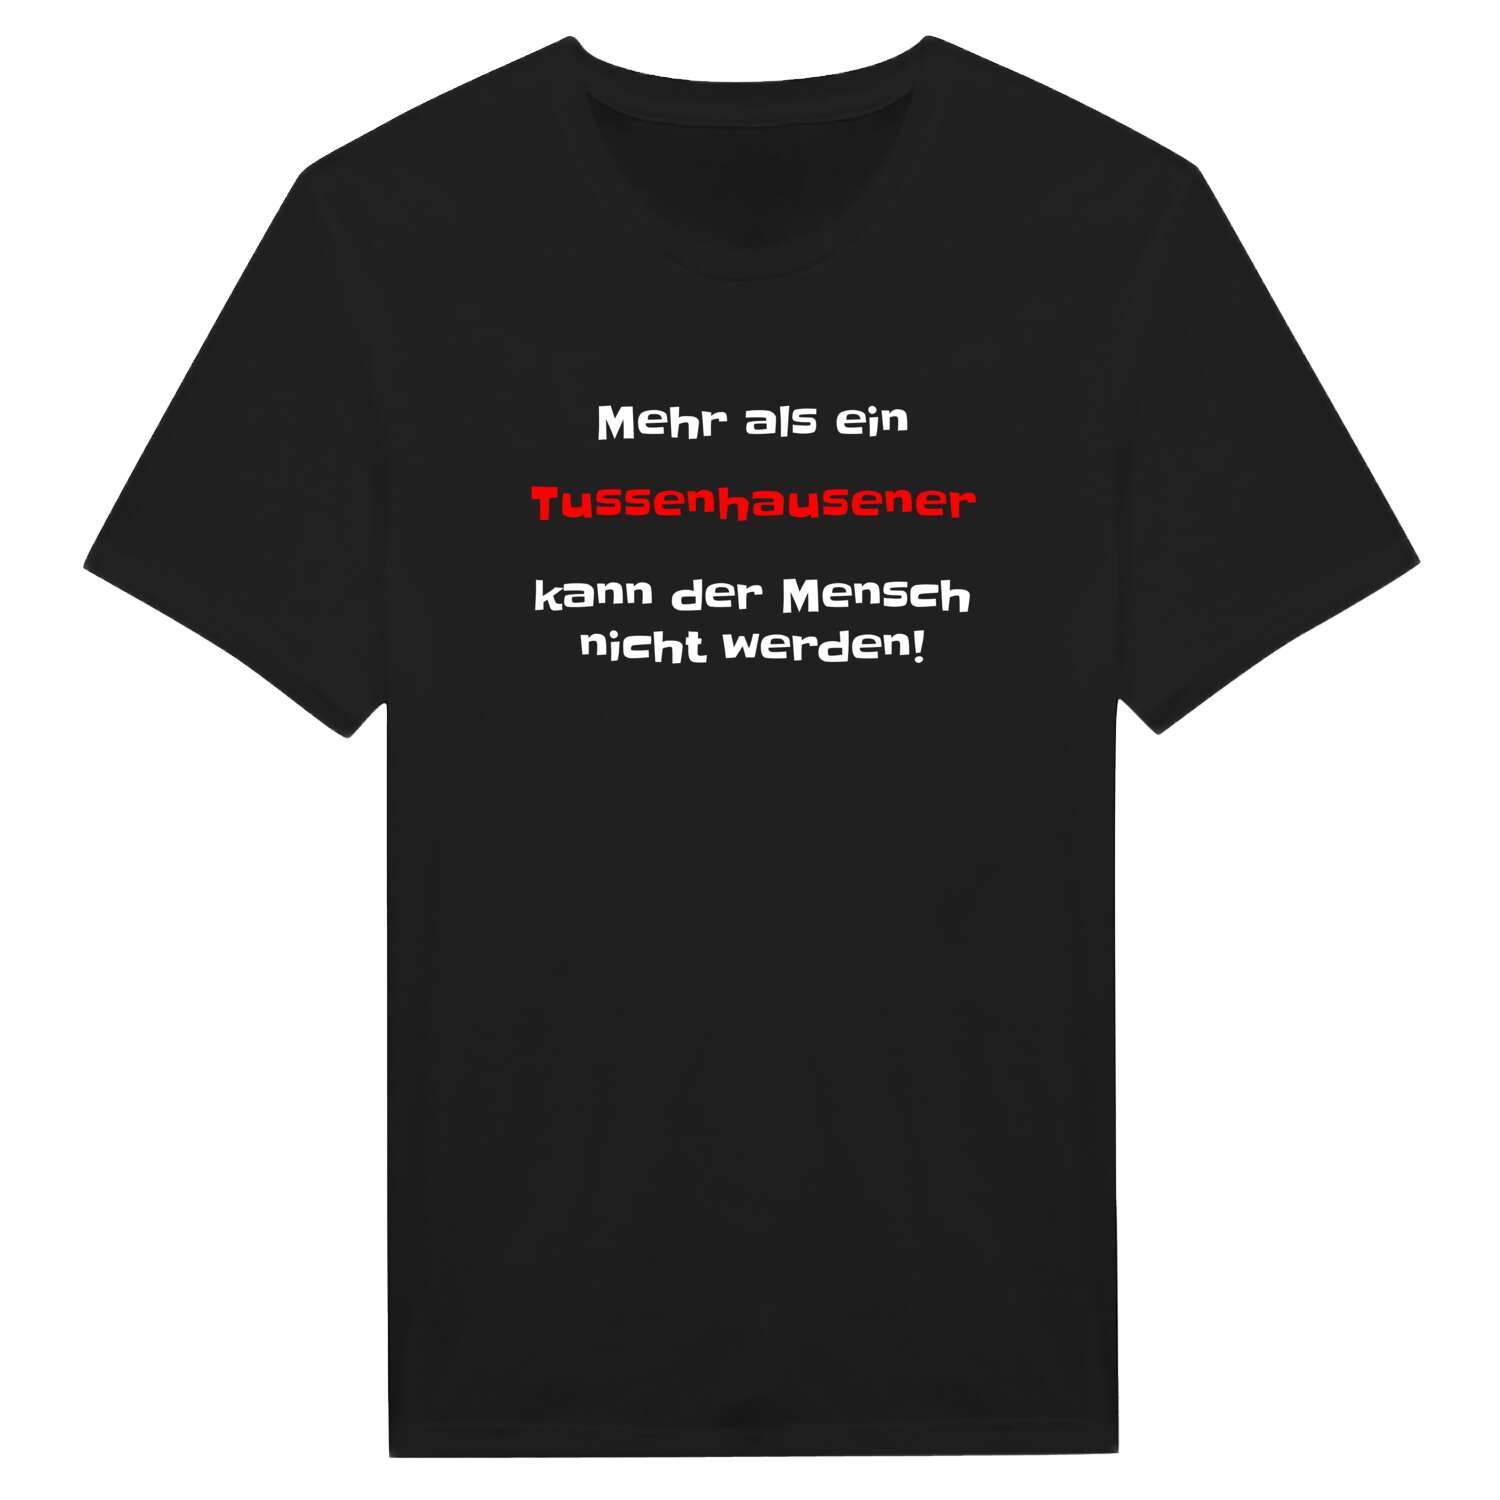 Tussenhausen T-Shirt »Mehr als ein«